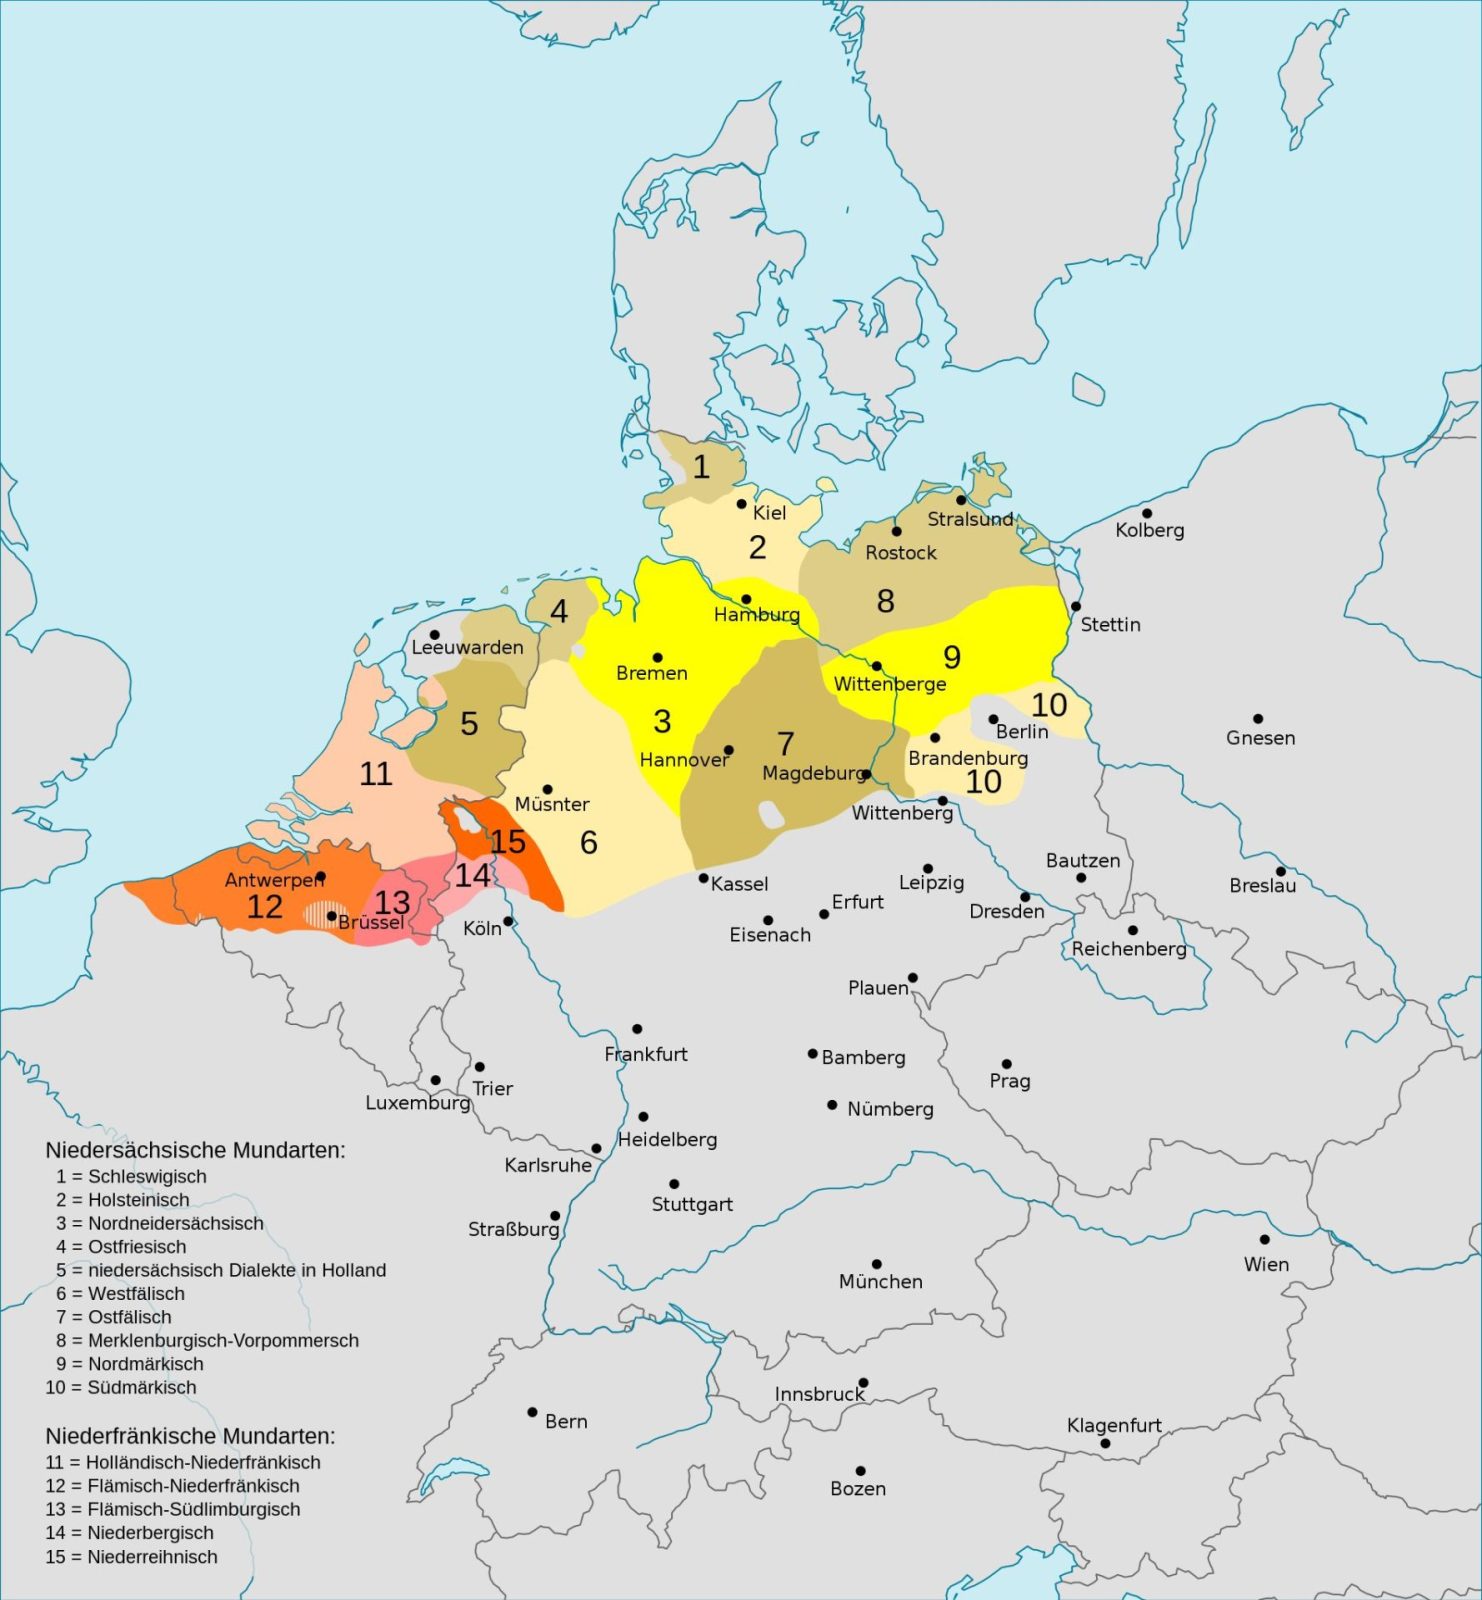 Карта распространения нижненемецких и нидерландских (нижнефранкских) диалектов.